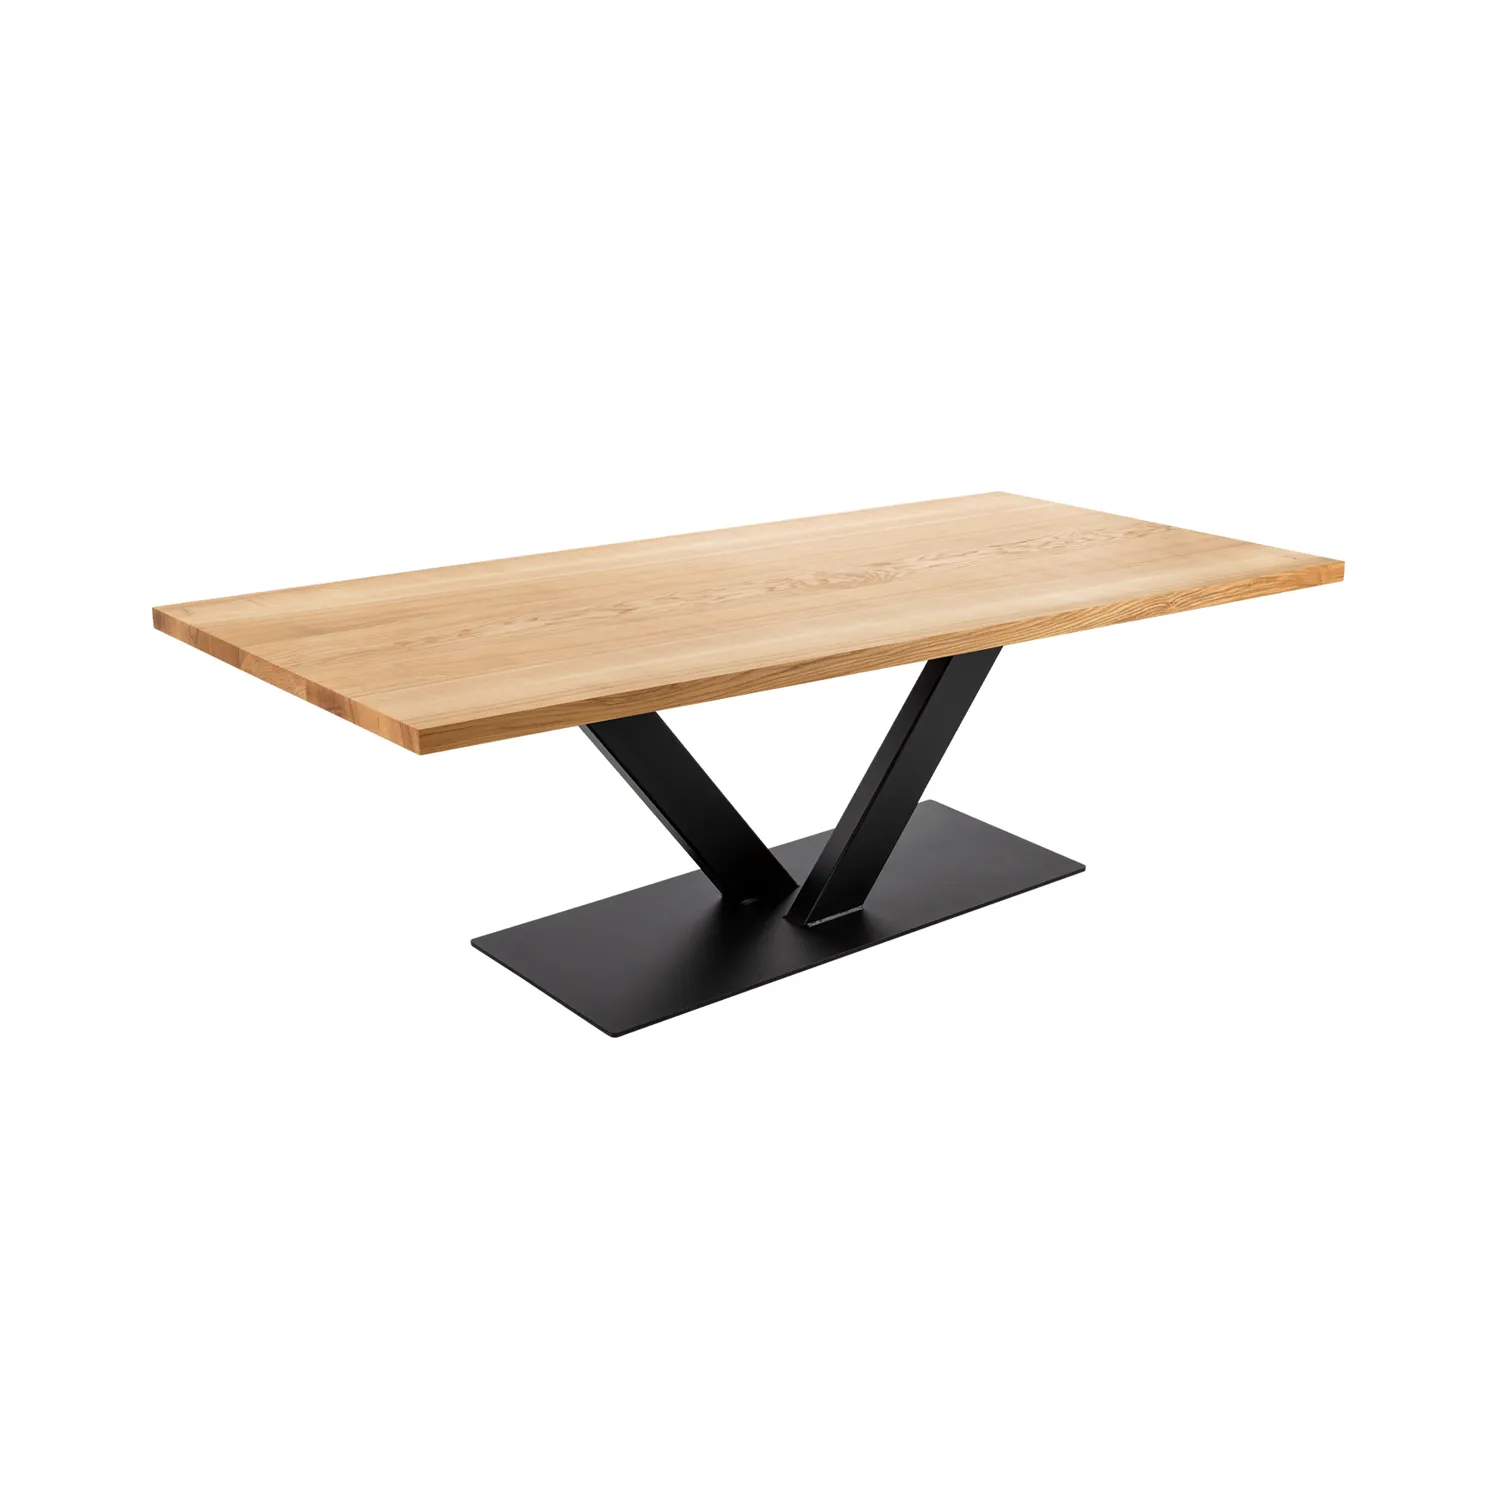 Tischgestell in V-Form aus massivem Rohstahl